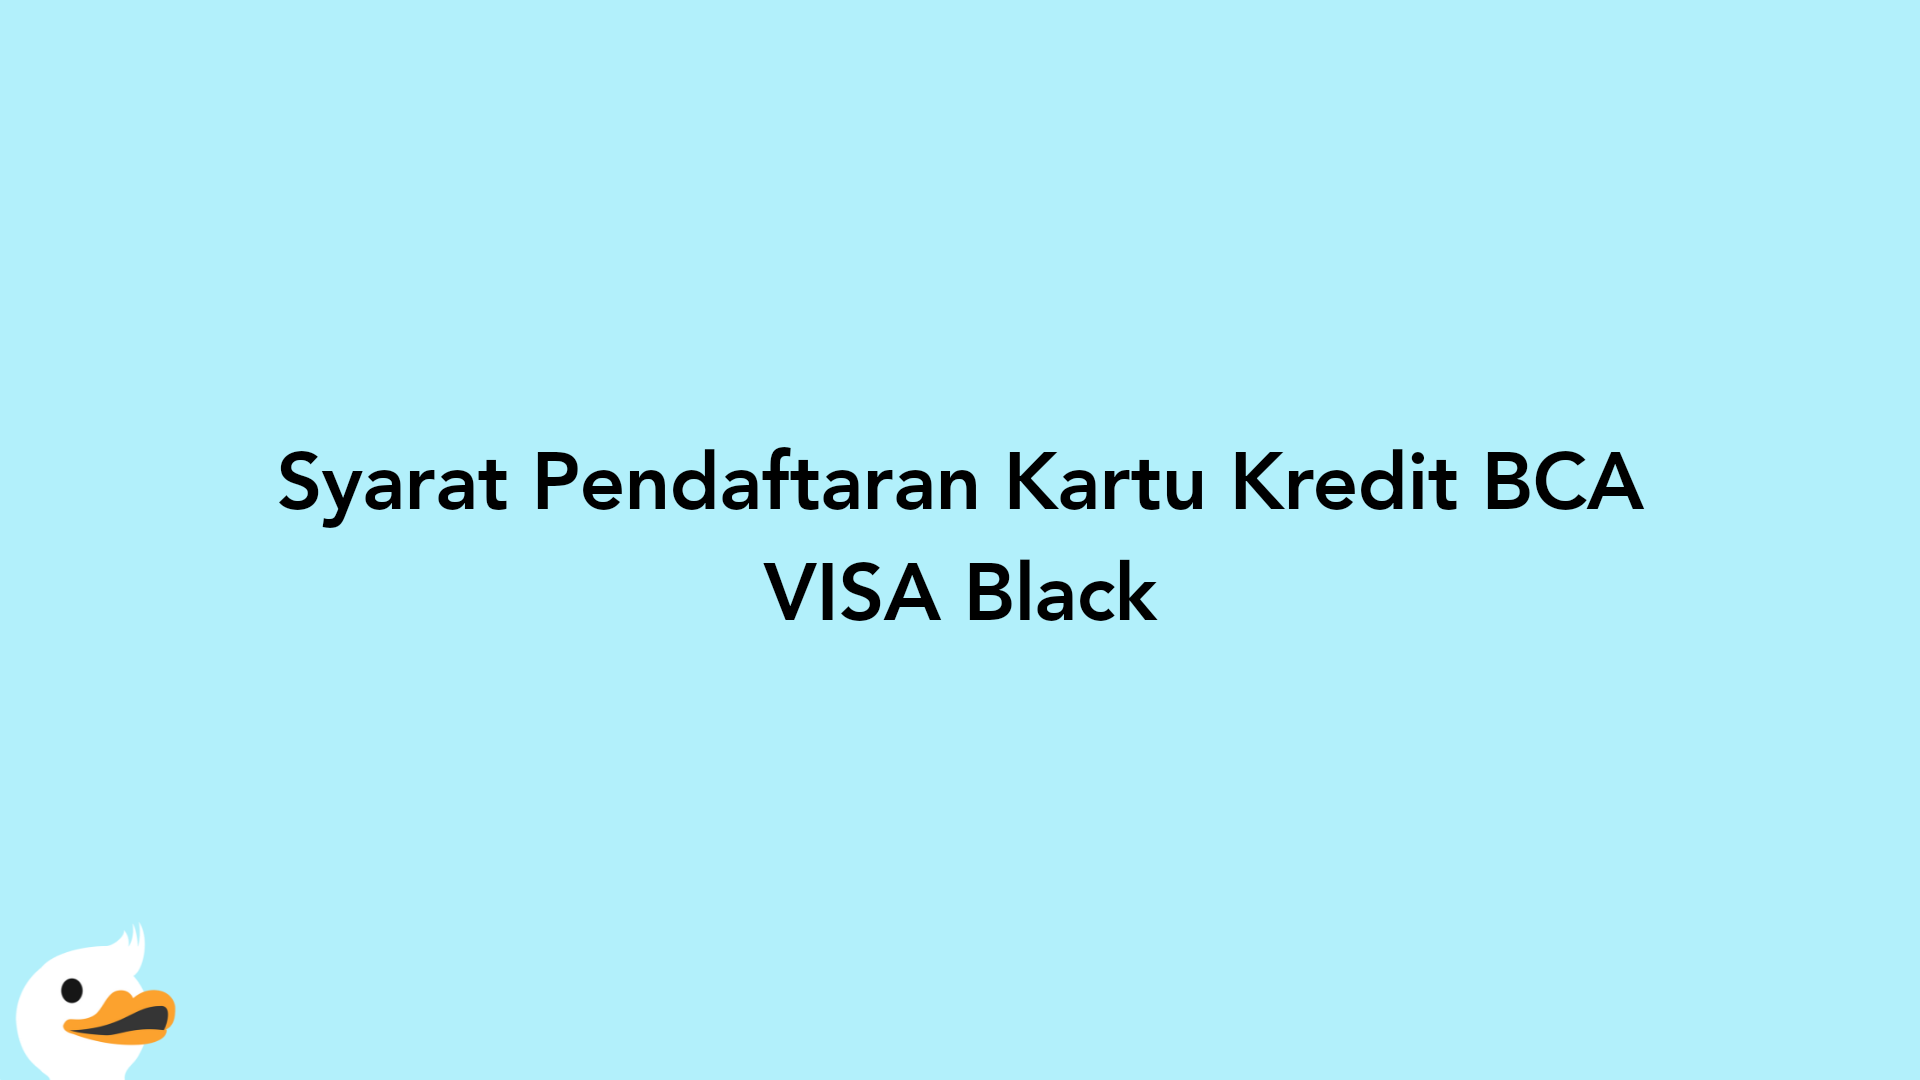 Syarat Pendaftaran Kartu Kredit BCA VISA Black